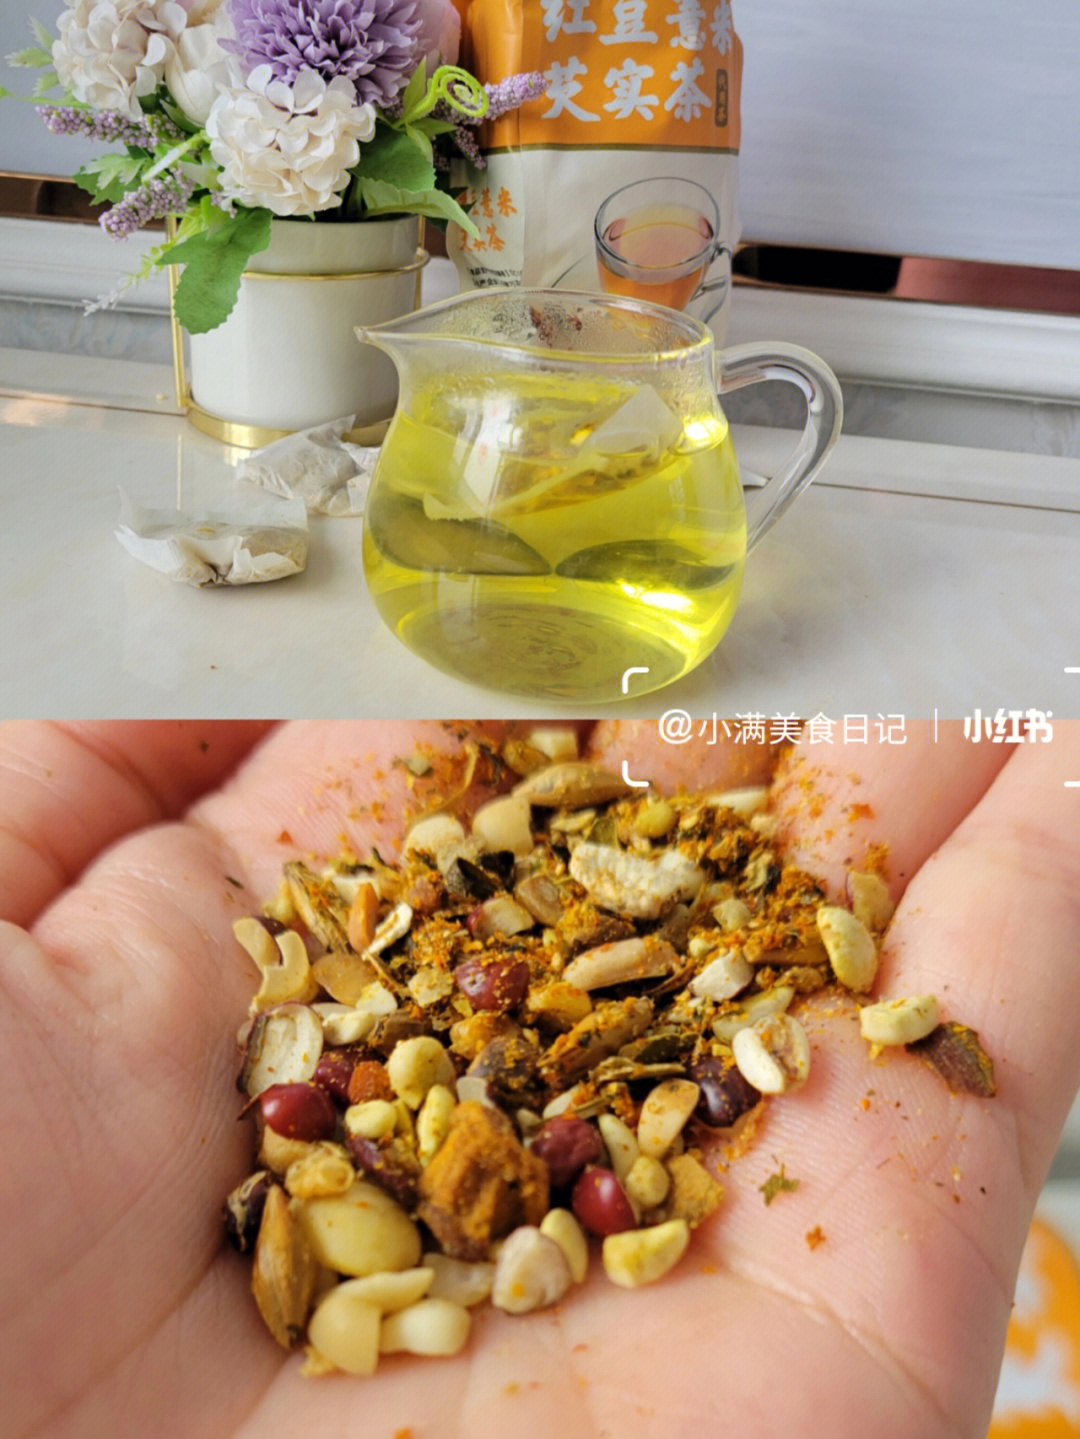 红豆薏米茶的禁忌图片